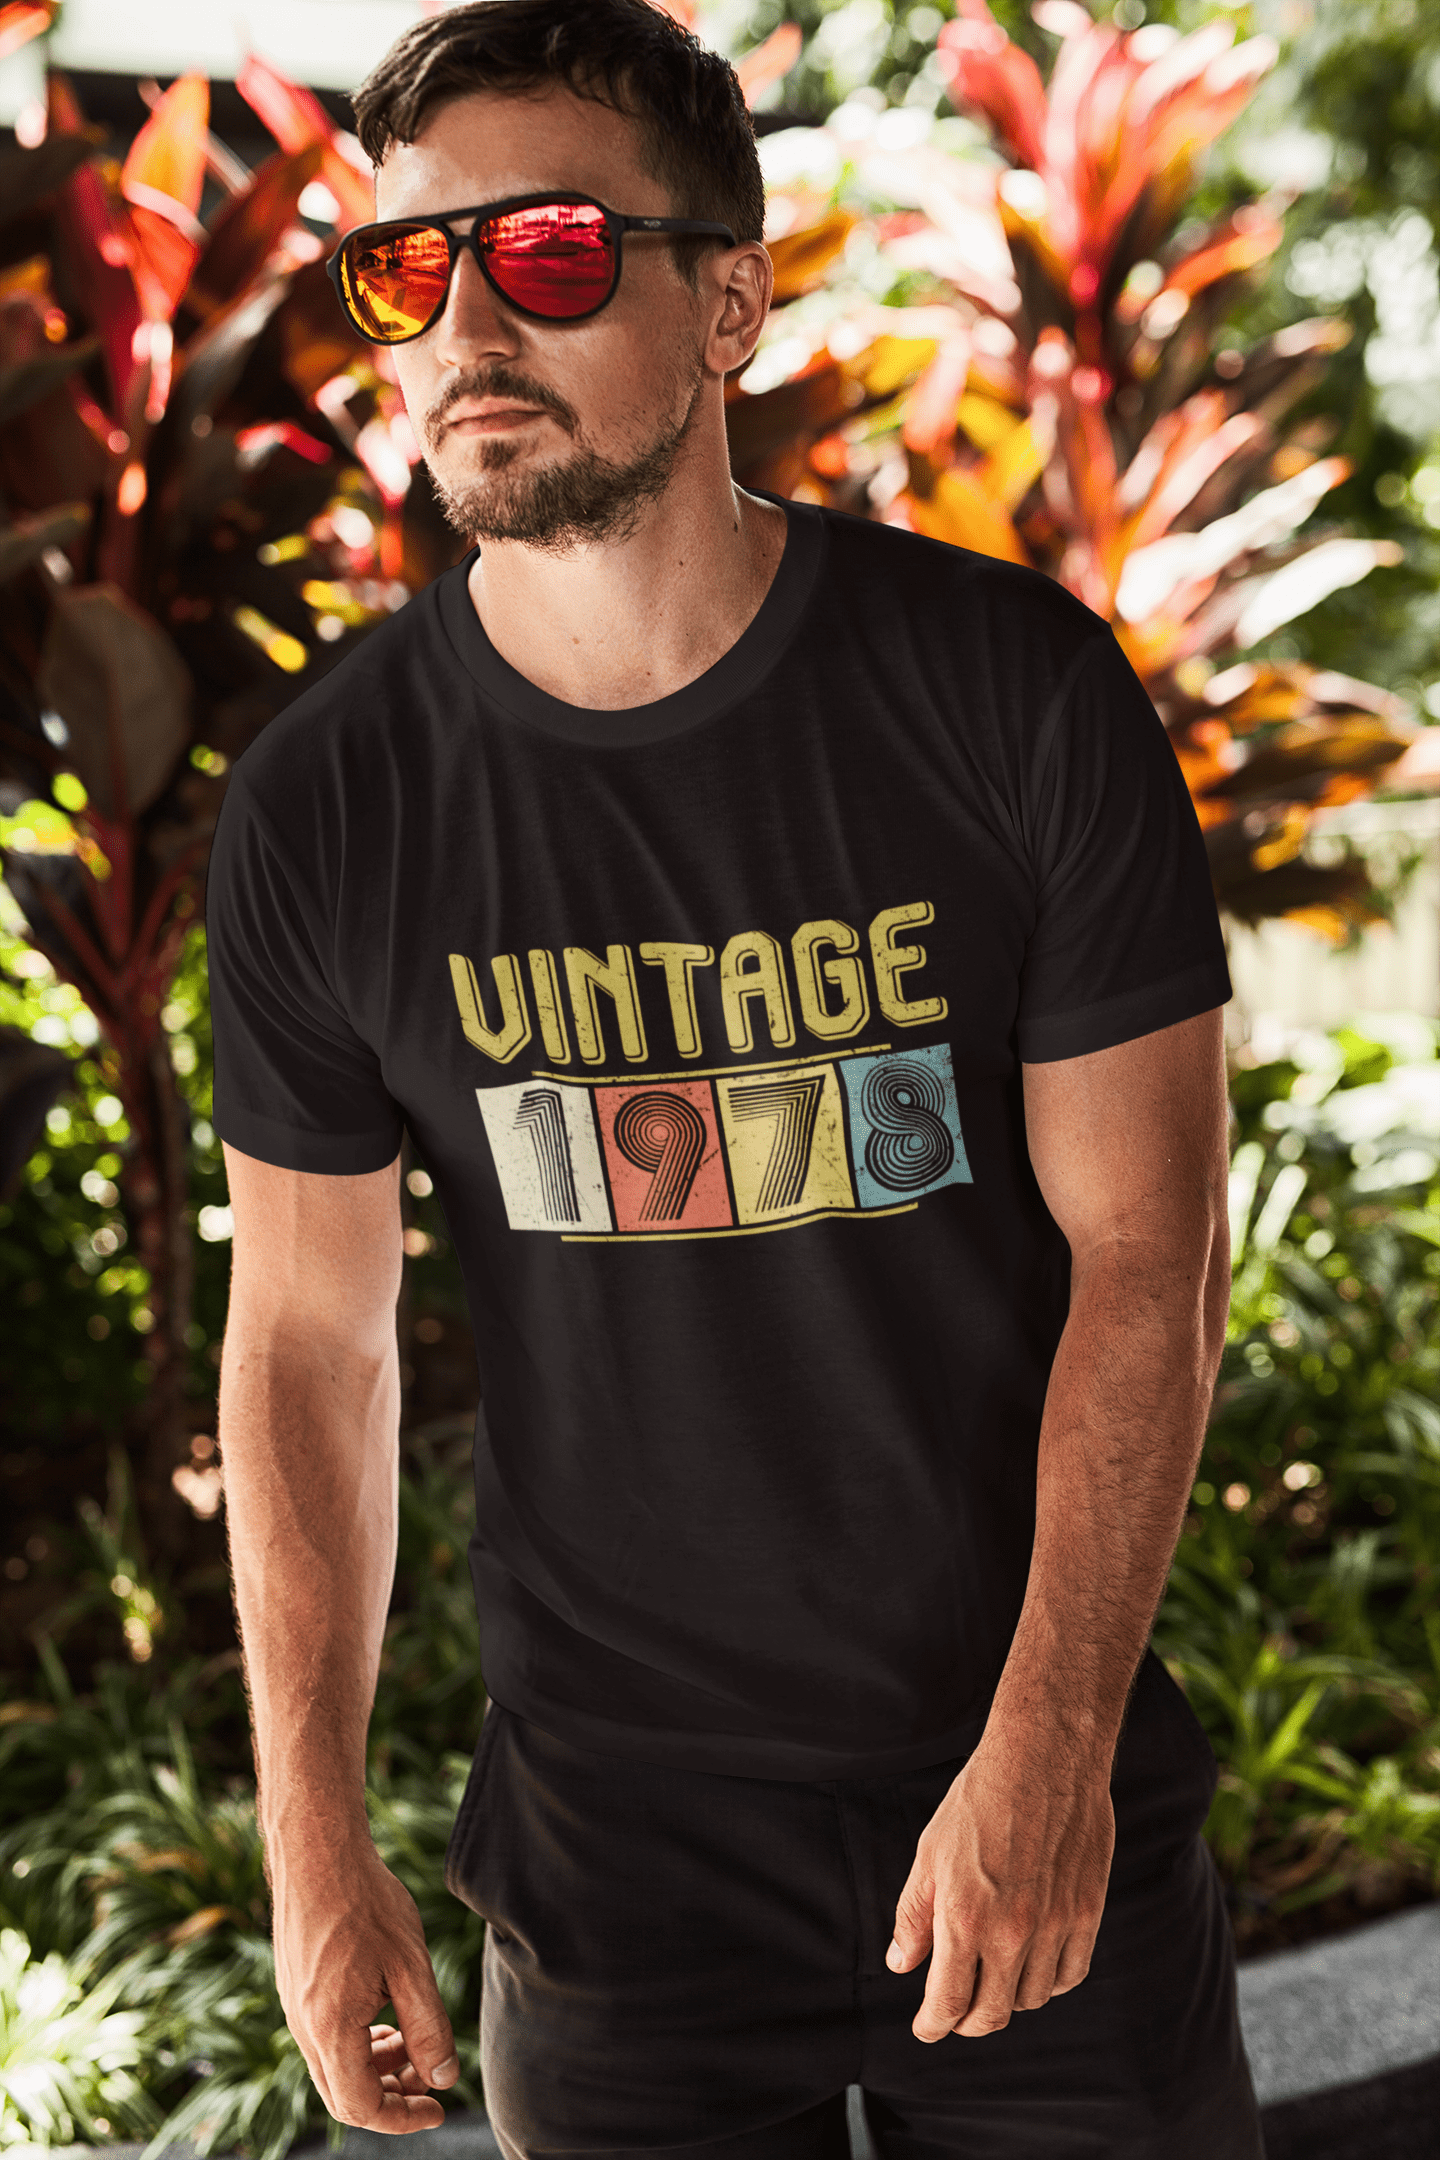 ULTRABASIC Men's T-Shirt Vintage 1978 - Gift for 43rd Birthday Tee Shirt